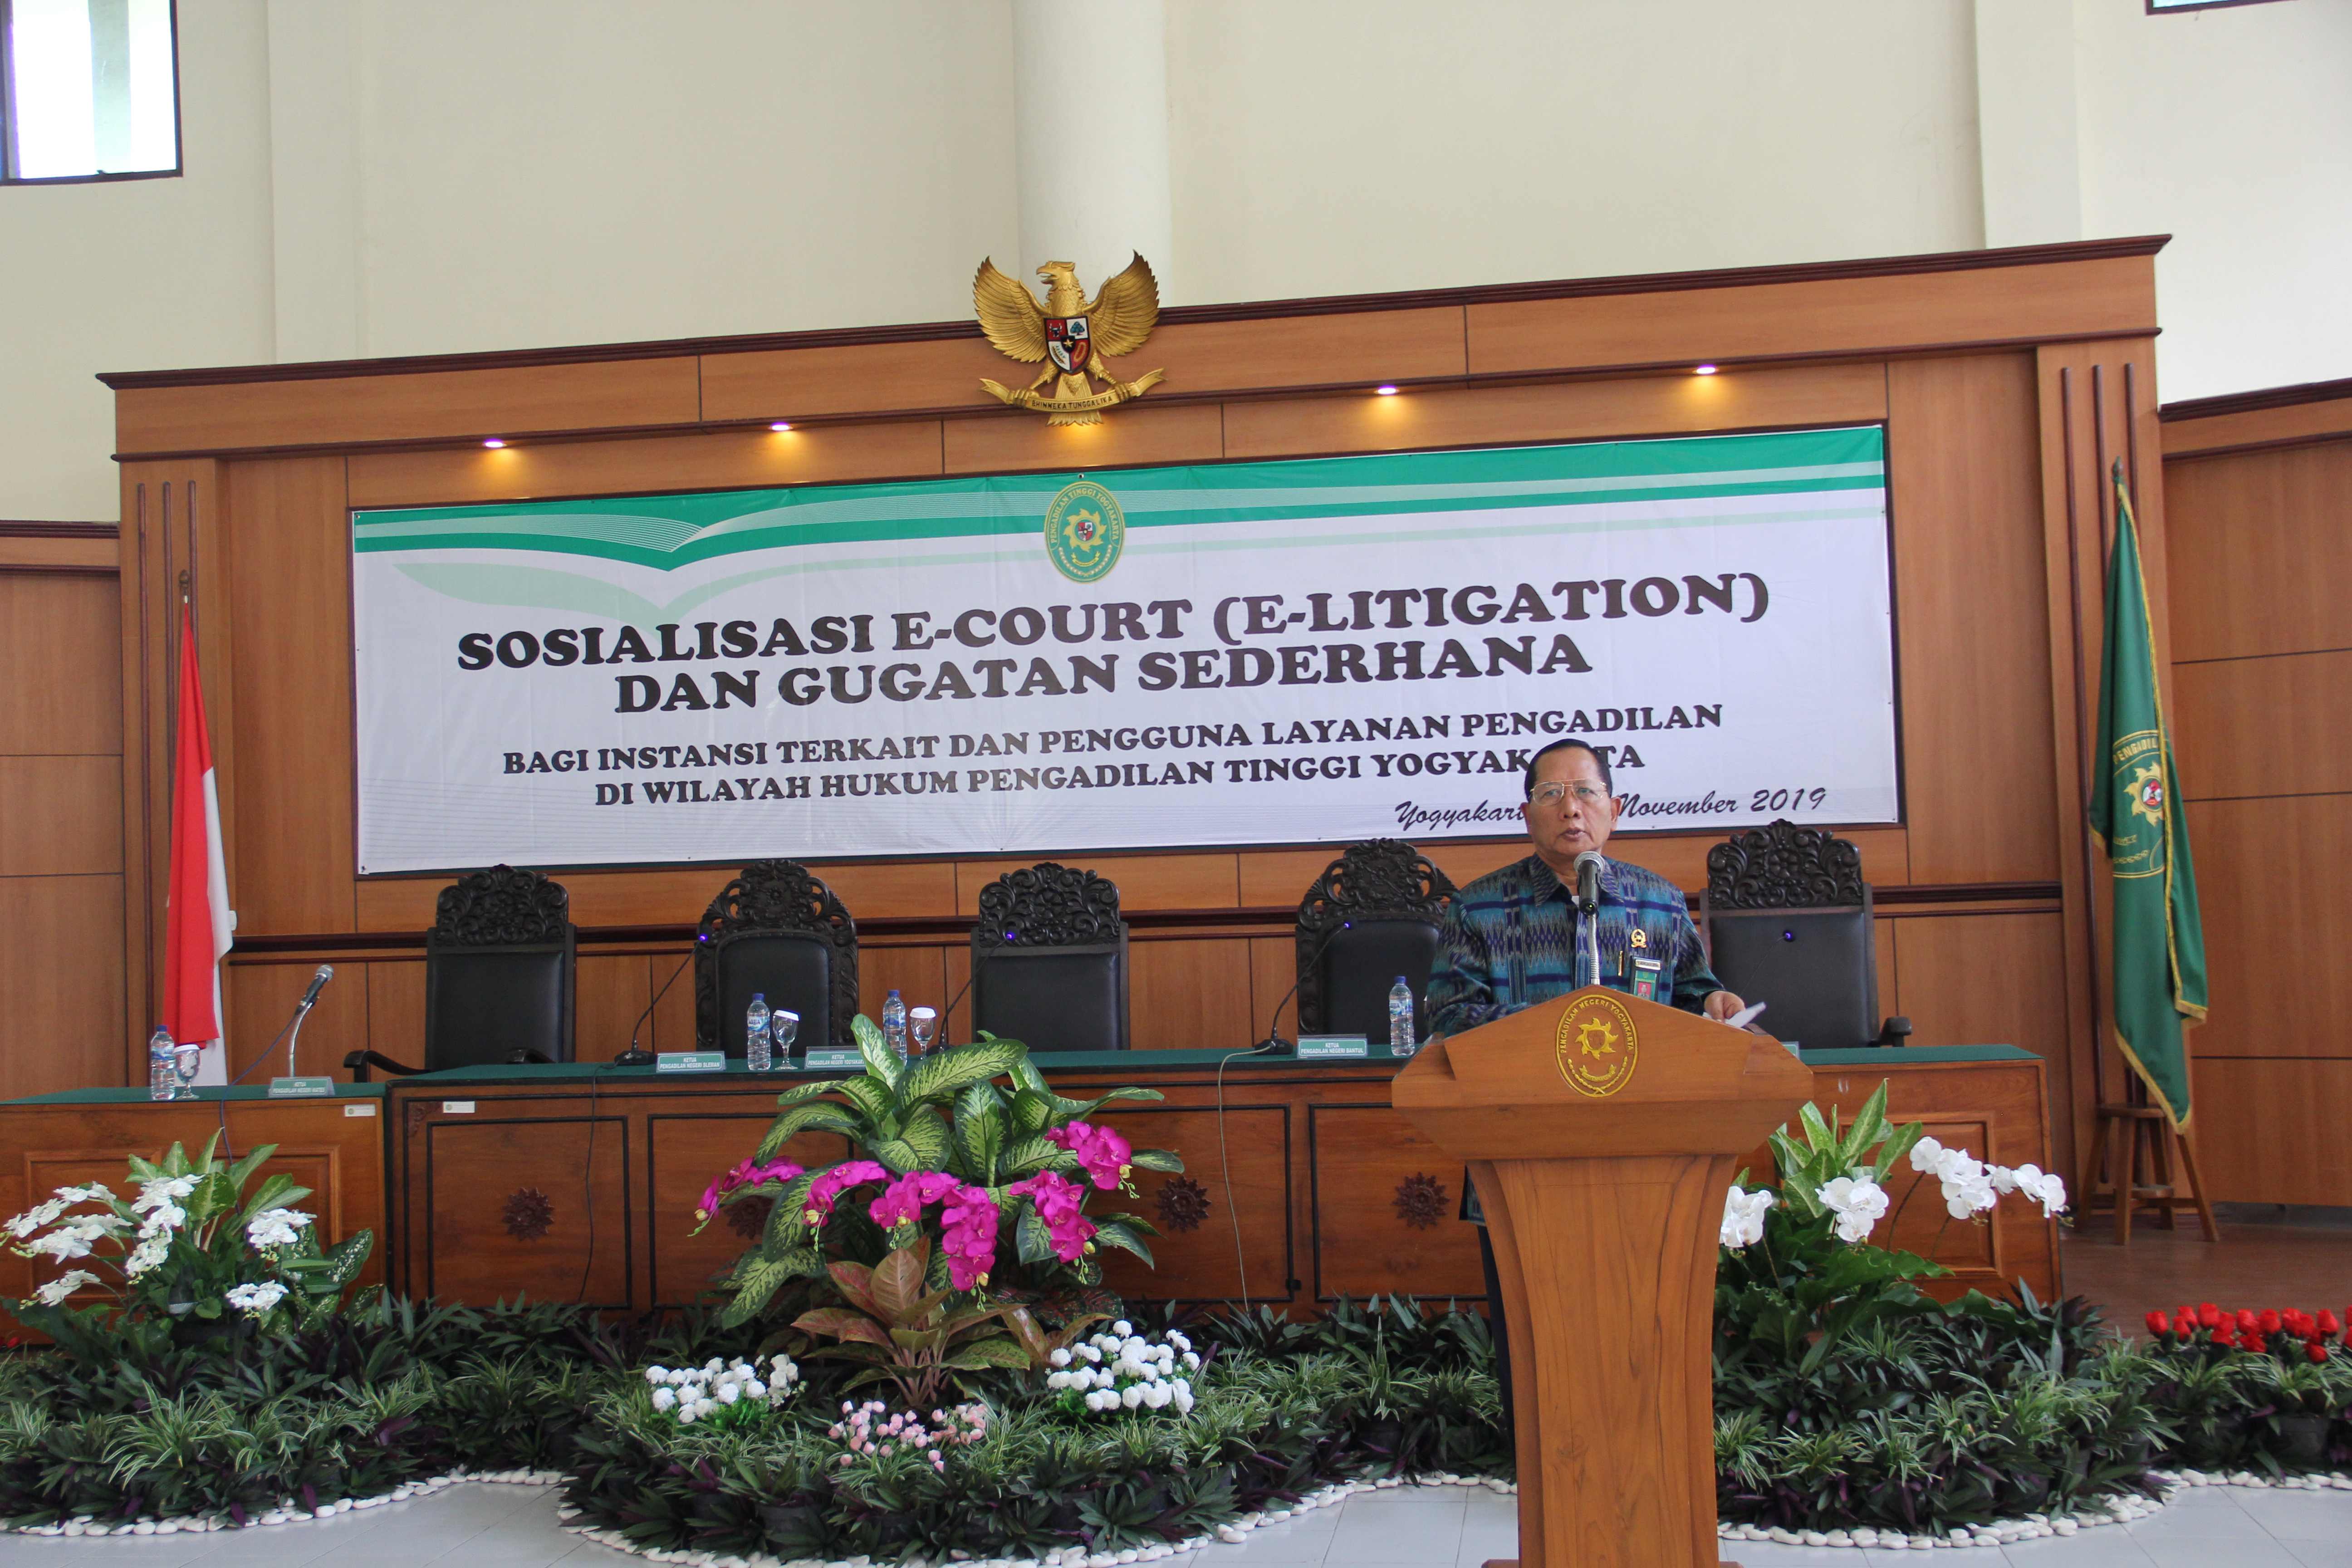 Sosialisasi E-Court, E-litigasi dan Gugatan Sederhana, dirangkaikan dengan Peresmian Co-Working Space Pengadilan Negeri Yogyakarta